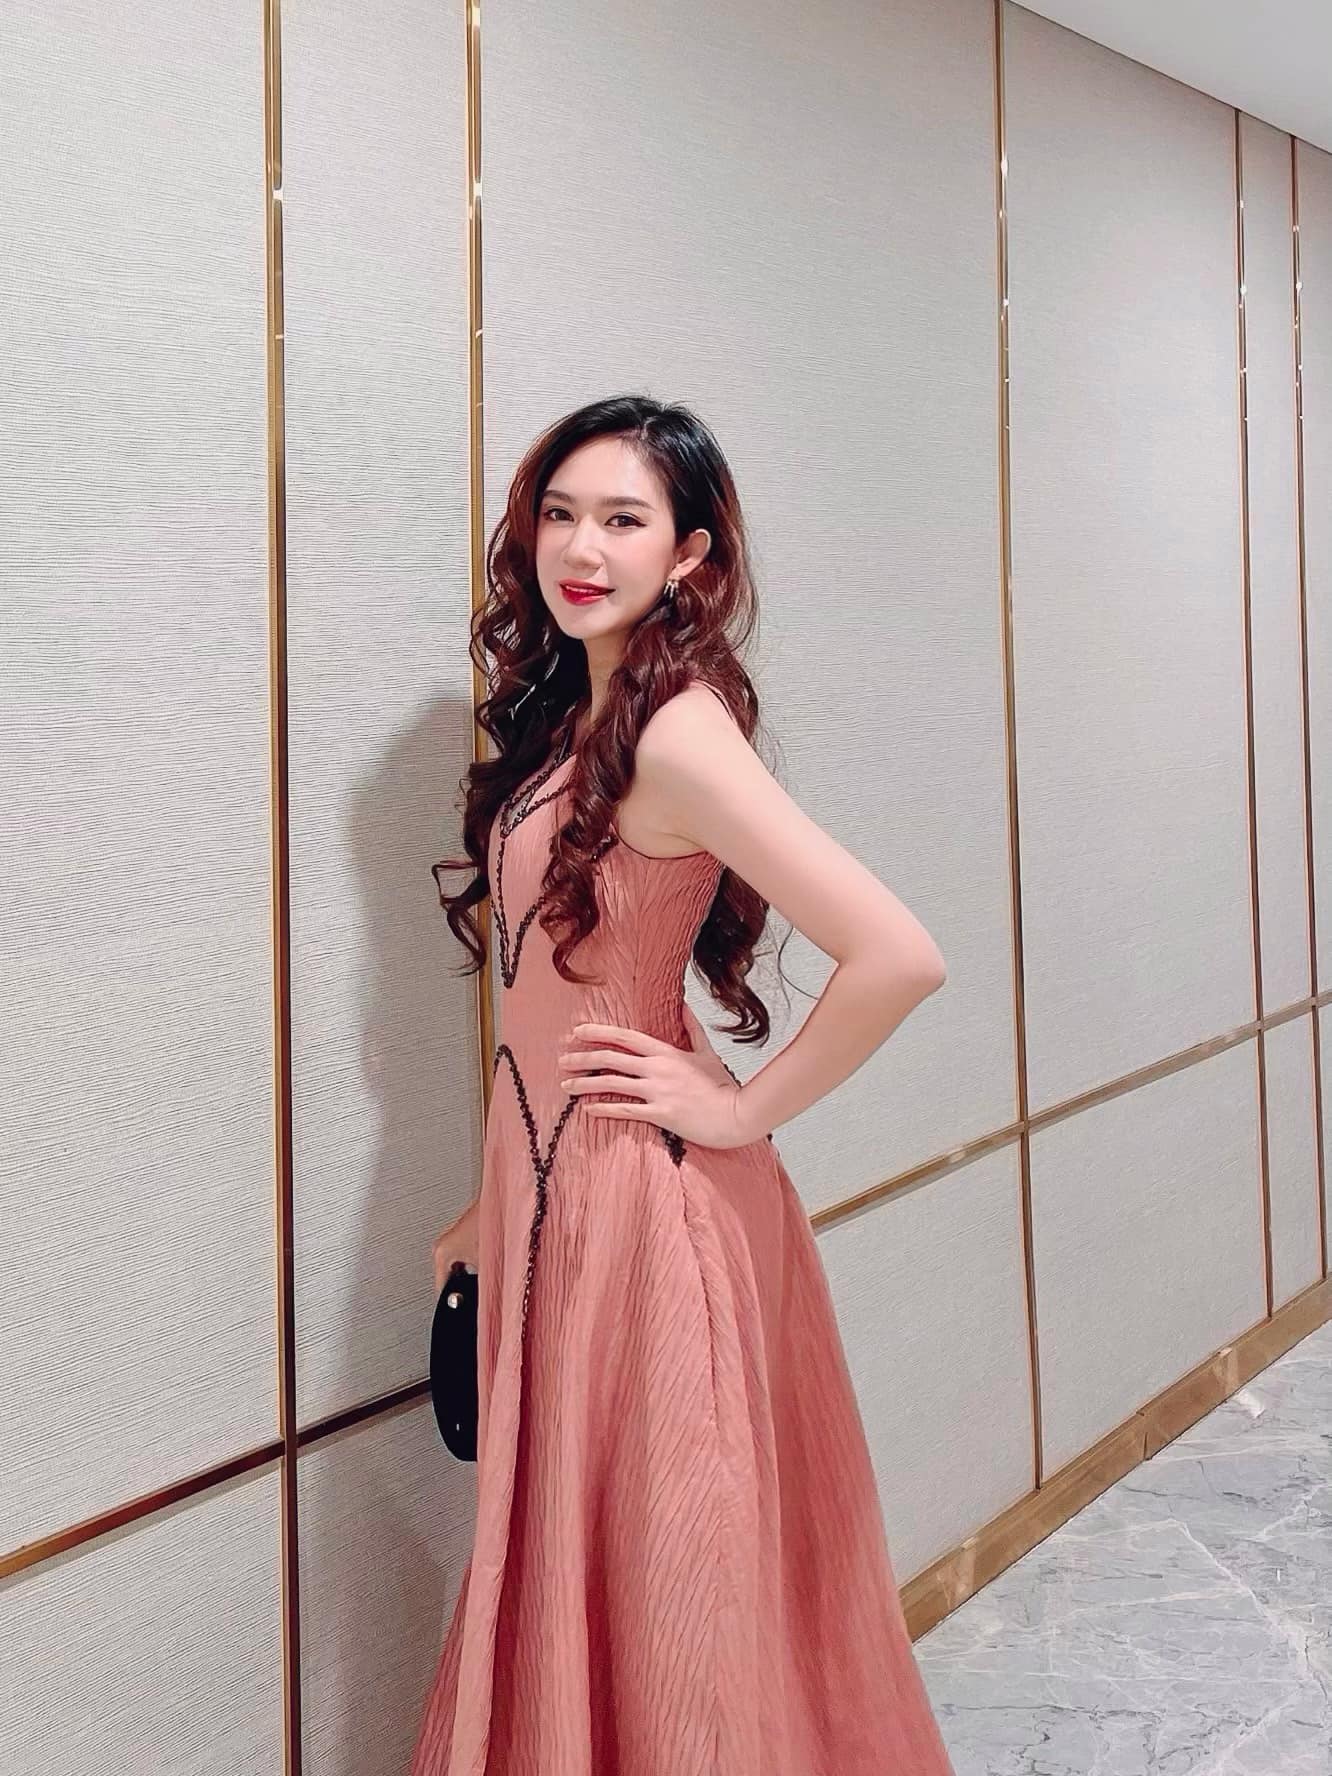 Vợ Lý Hải đáp trả khi bị nói diện váy hồng sai dresscode, chiếm spotlight cô dâu ở đám cưới Mạc Văn Khoa